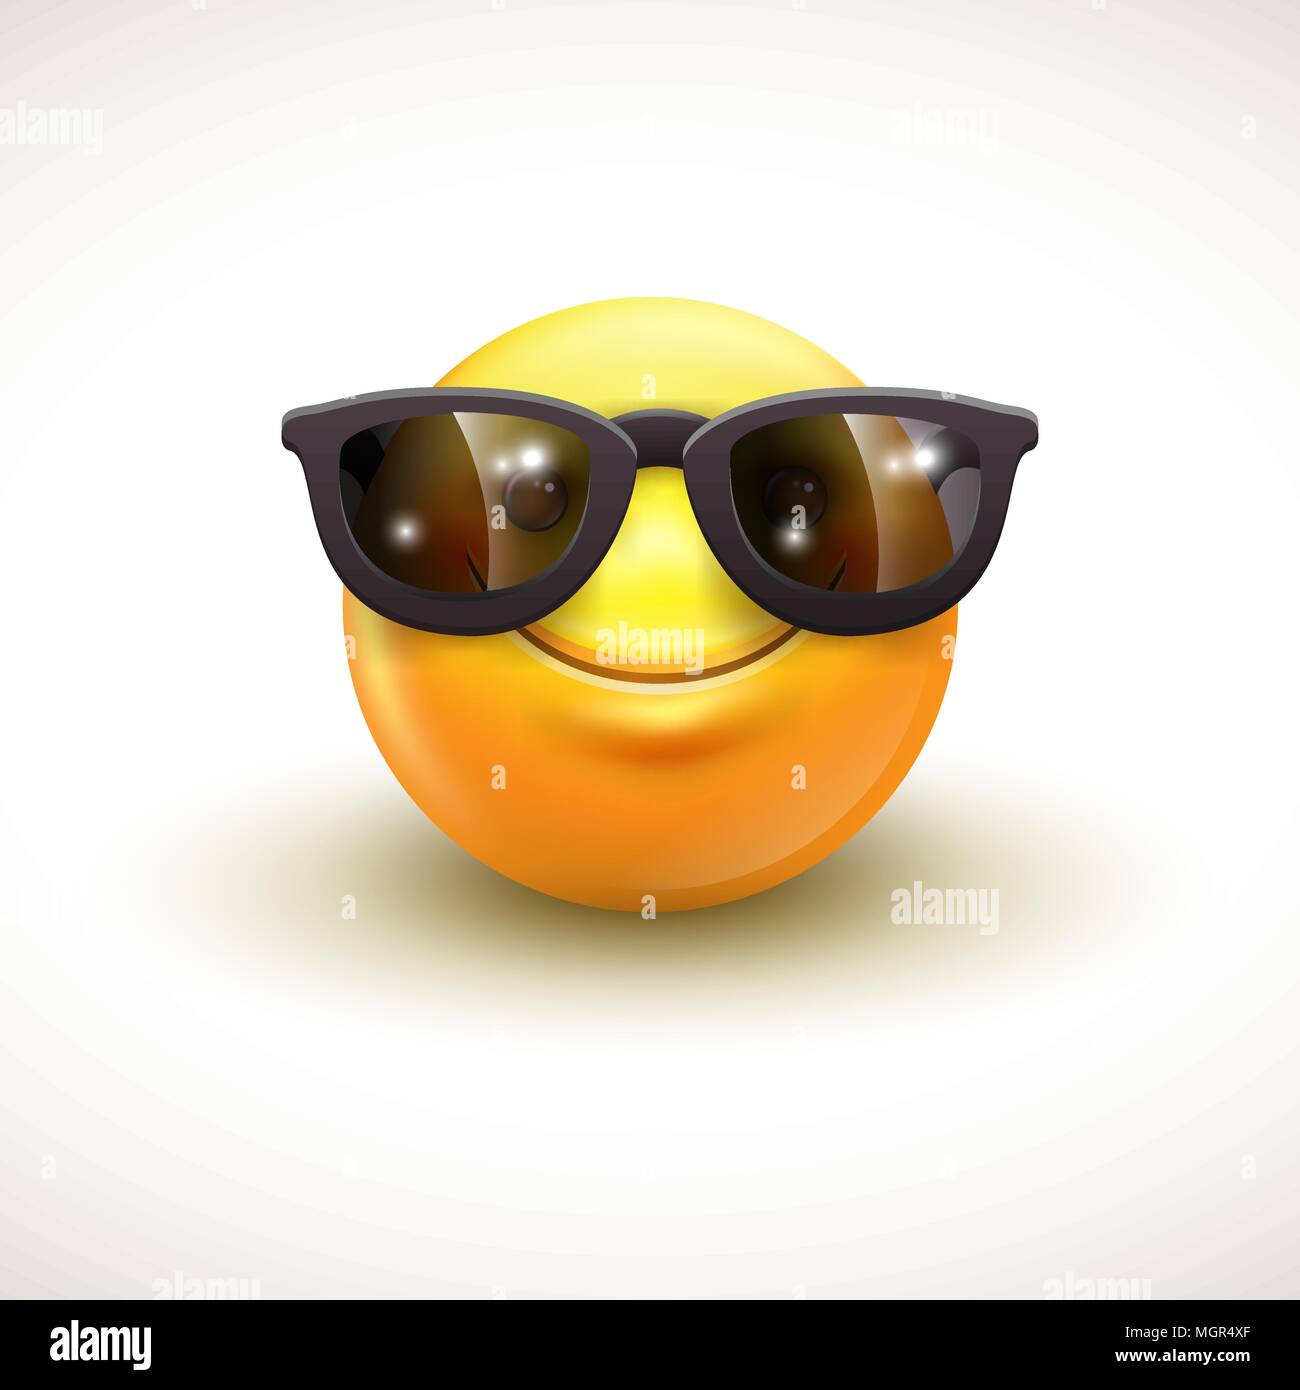 Niedlich Lächeln Emoticon tragen schwarze Sonnenbrille, Emoji, Smiley - Vektor-illustration Stock Vektor